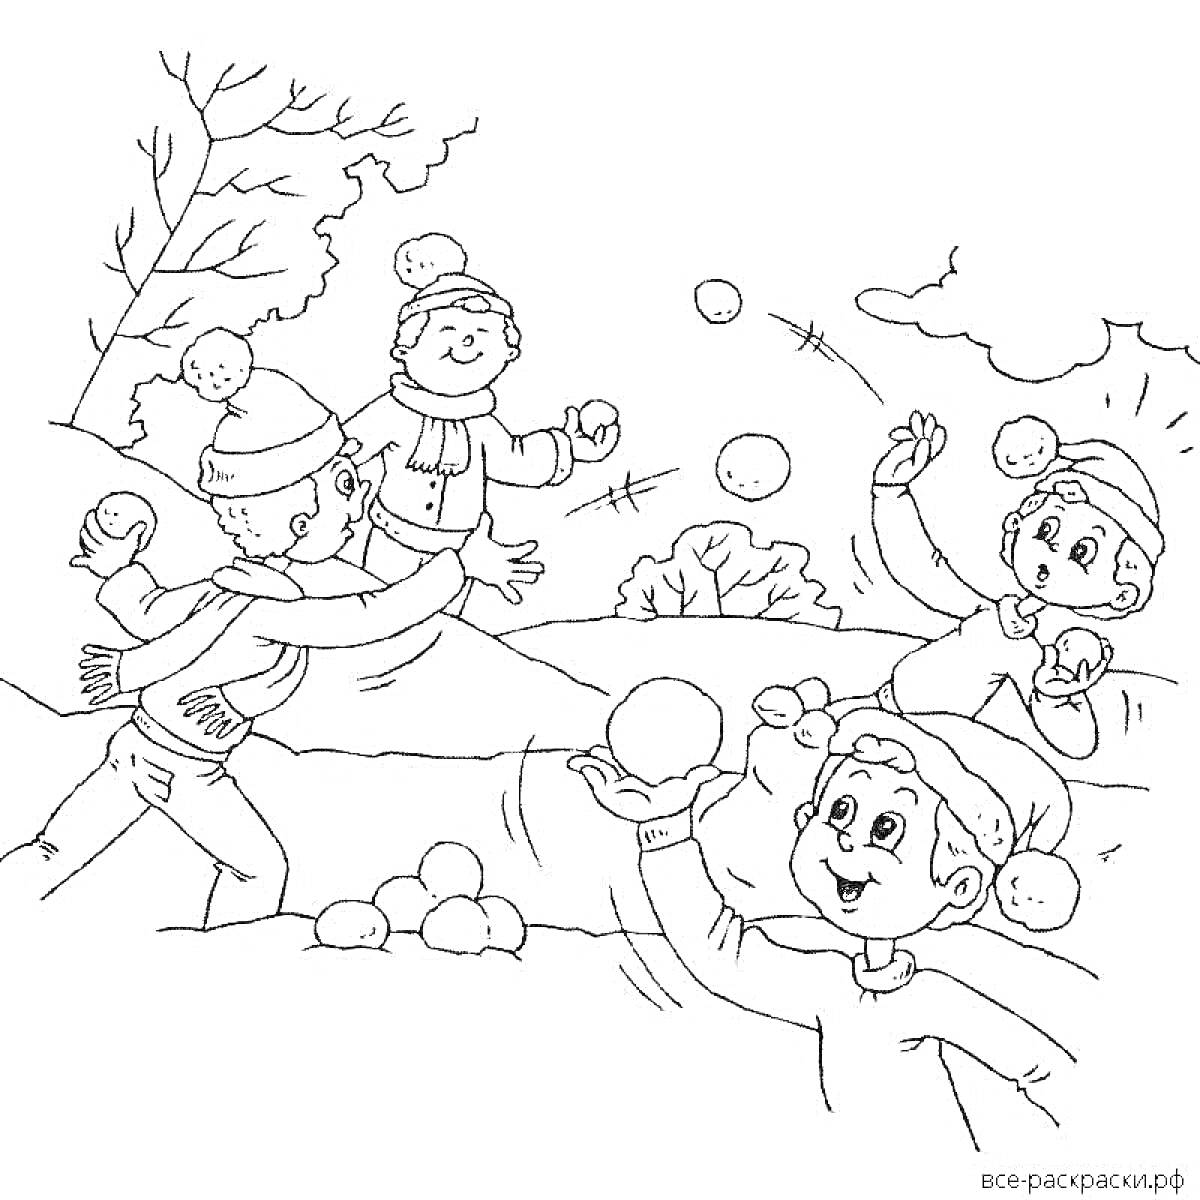 дети в тёплой одежде играют в снежки зимой